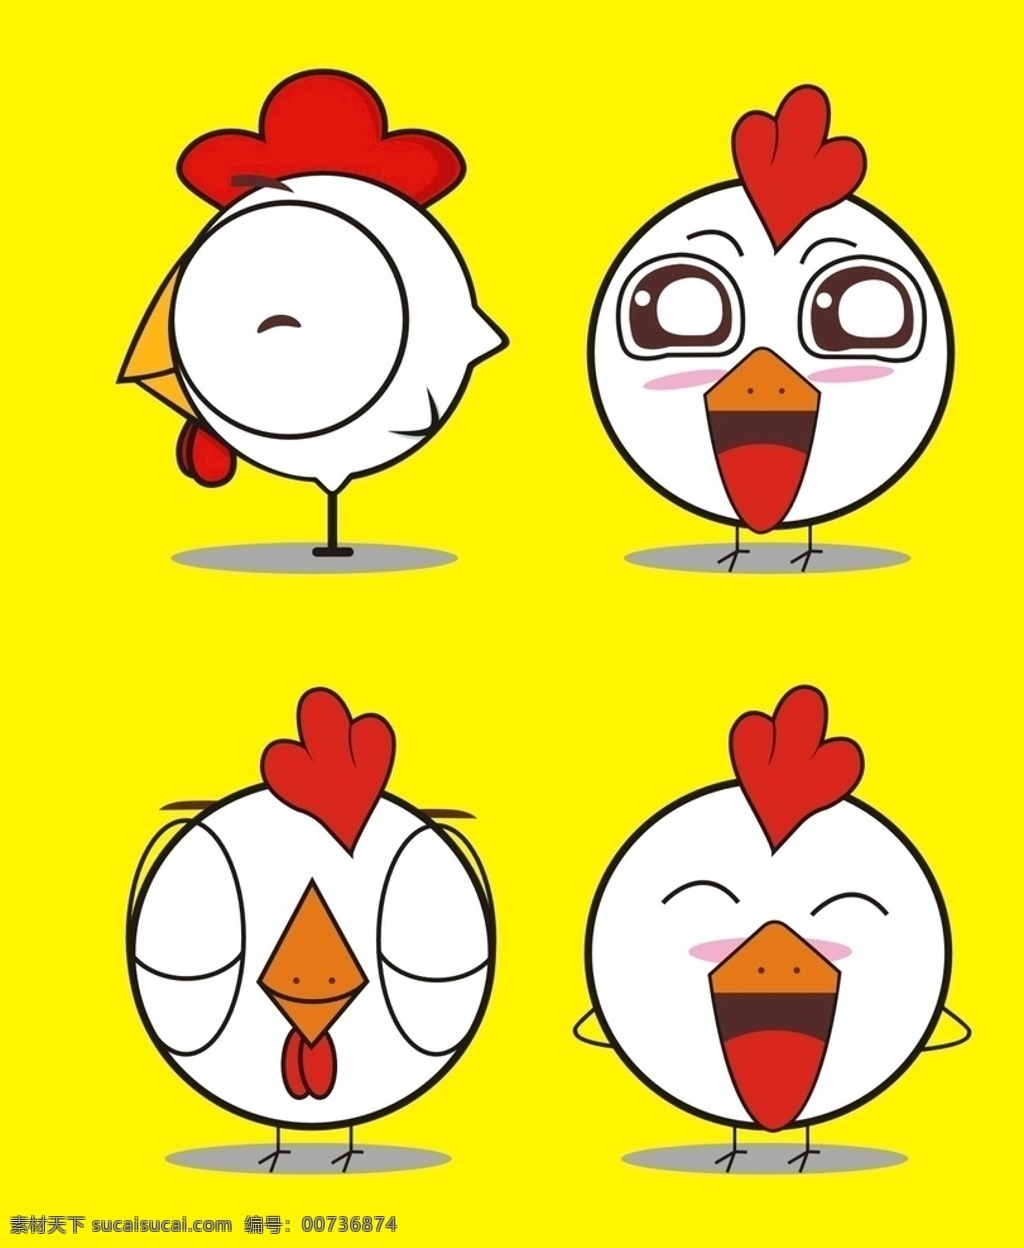 卡通小鸡 可爱小鸡 炸鸡 小鸡表情包 卡通 矢量 叫了个炸鸡 炸鸡logo 小鸡logo 鸡logo 矢量小鸡 小鸡图片 矢量卡通小鸡 卡通设计